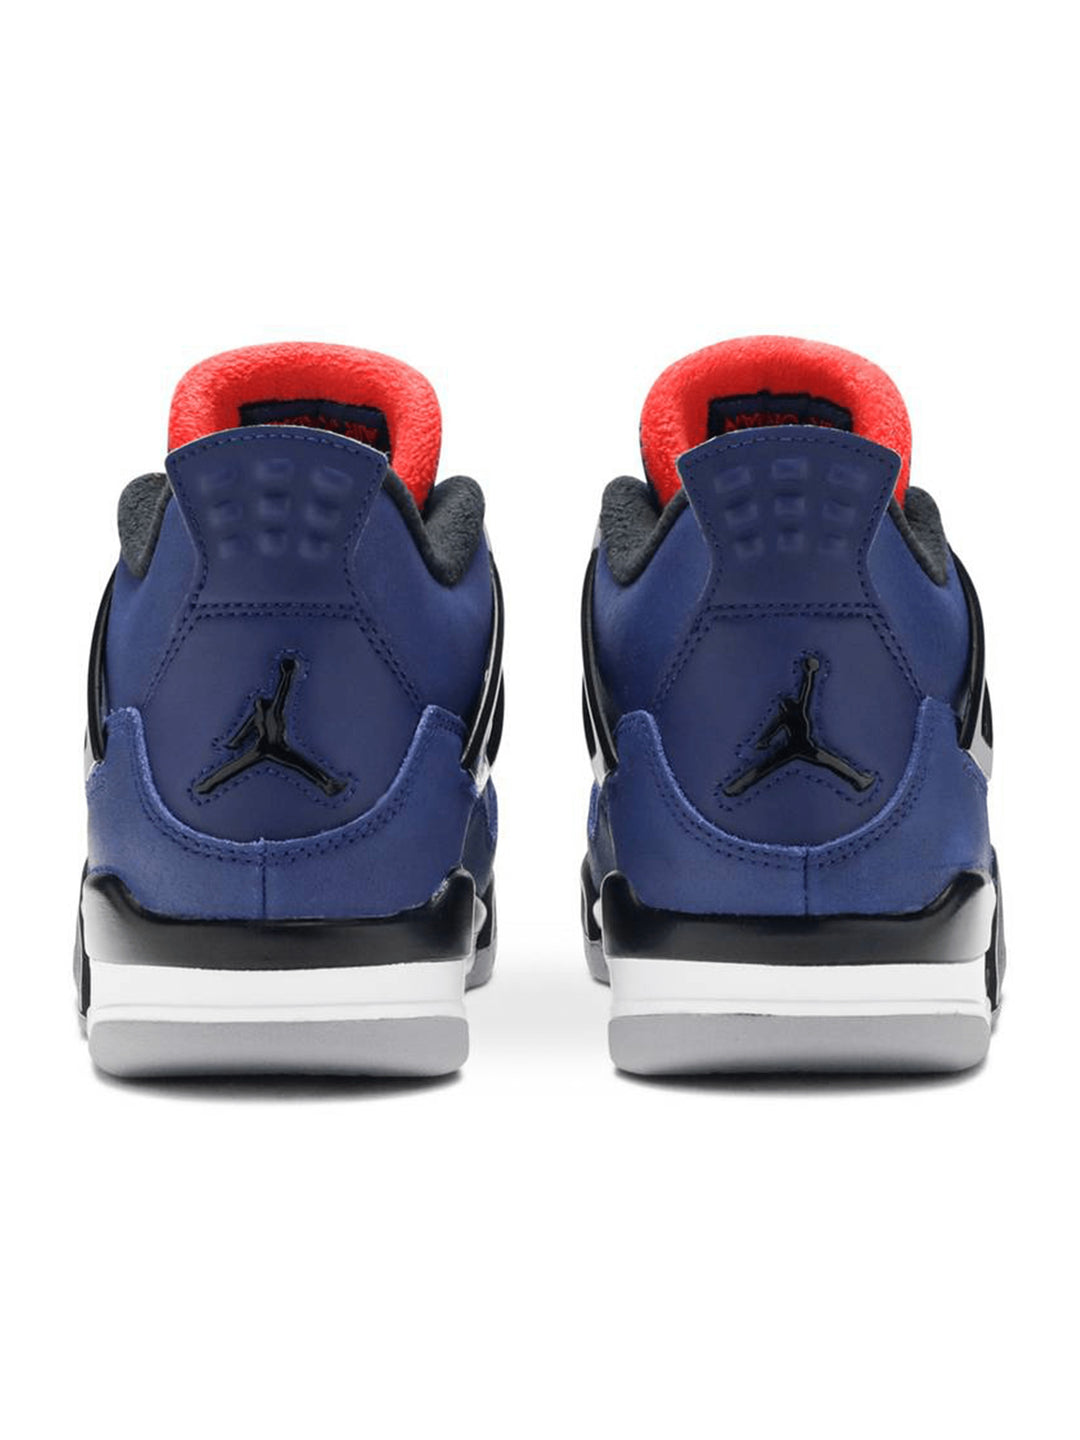 Nike Air Jordan 4 Winterized Loyal Blue Jordan Brand